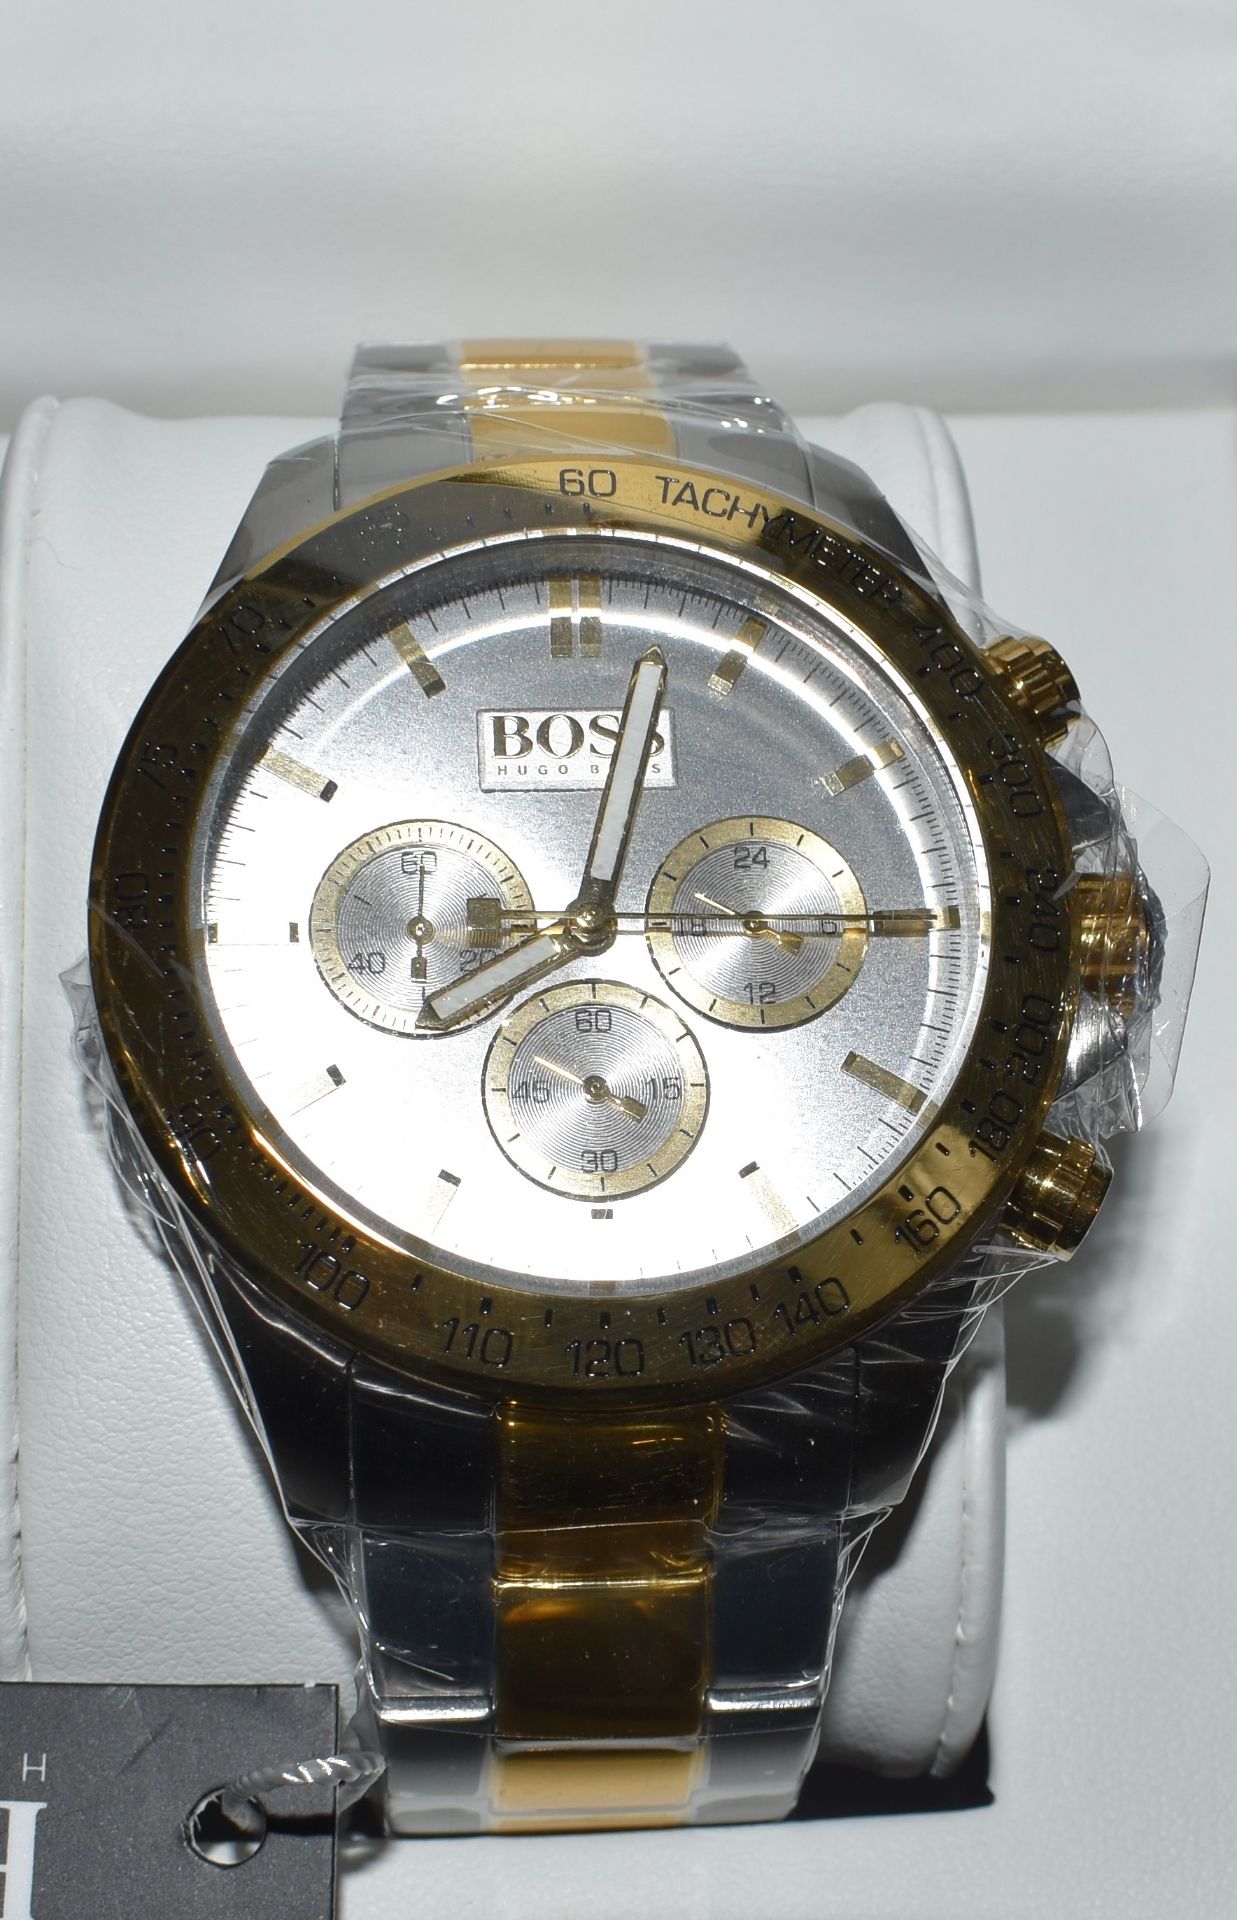 Hugo Boss Men's Watch 1512960 - Image 2 of 2